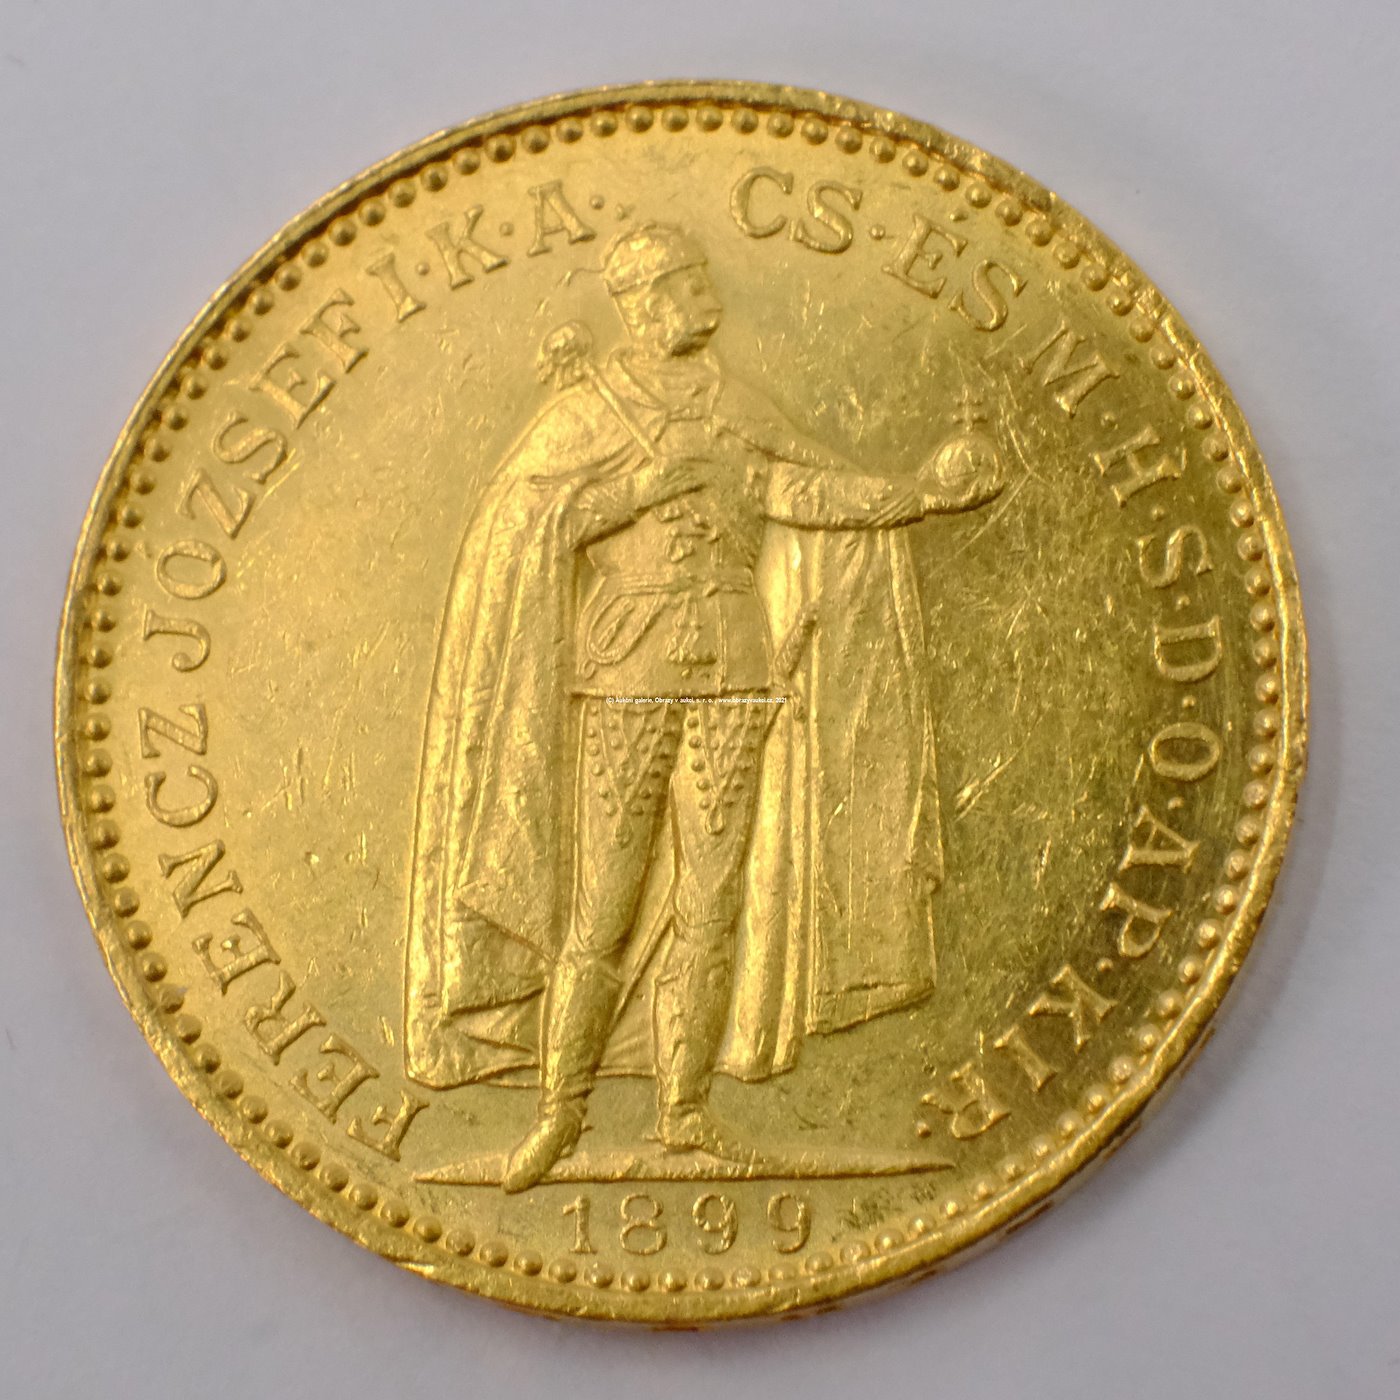 .. - Rakousko Uhersko zlatá 20 Koruna 1899 uherská. Zlato 900/1000, hrubá hmotnost mince 6,78g